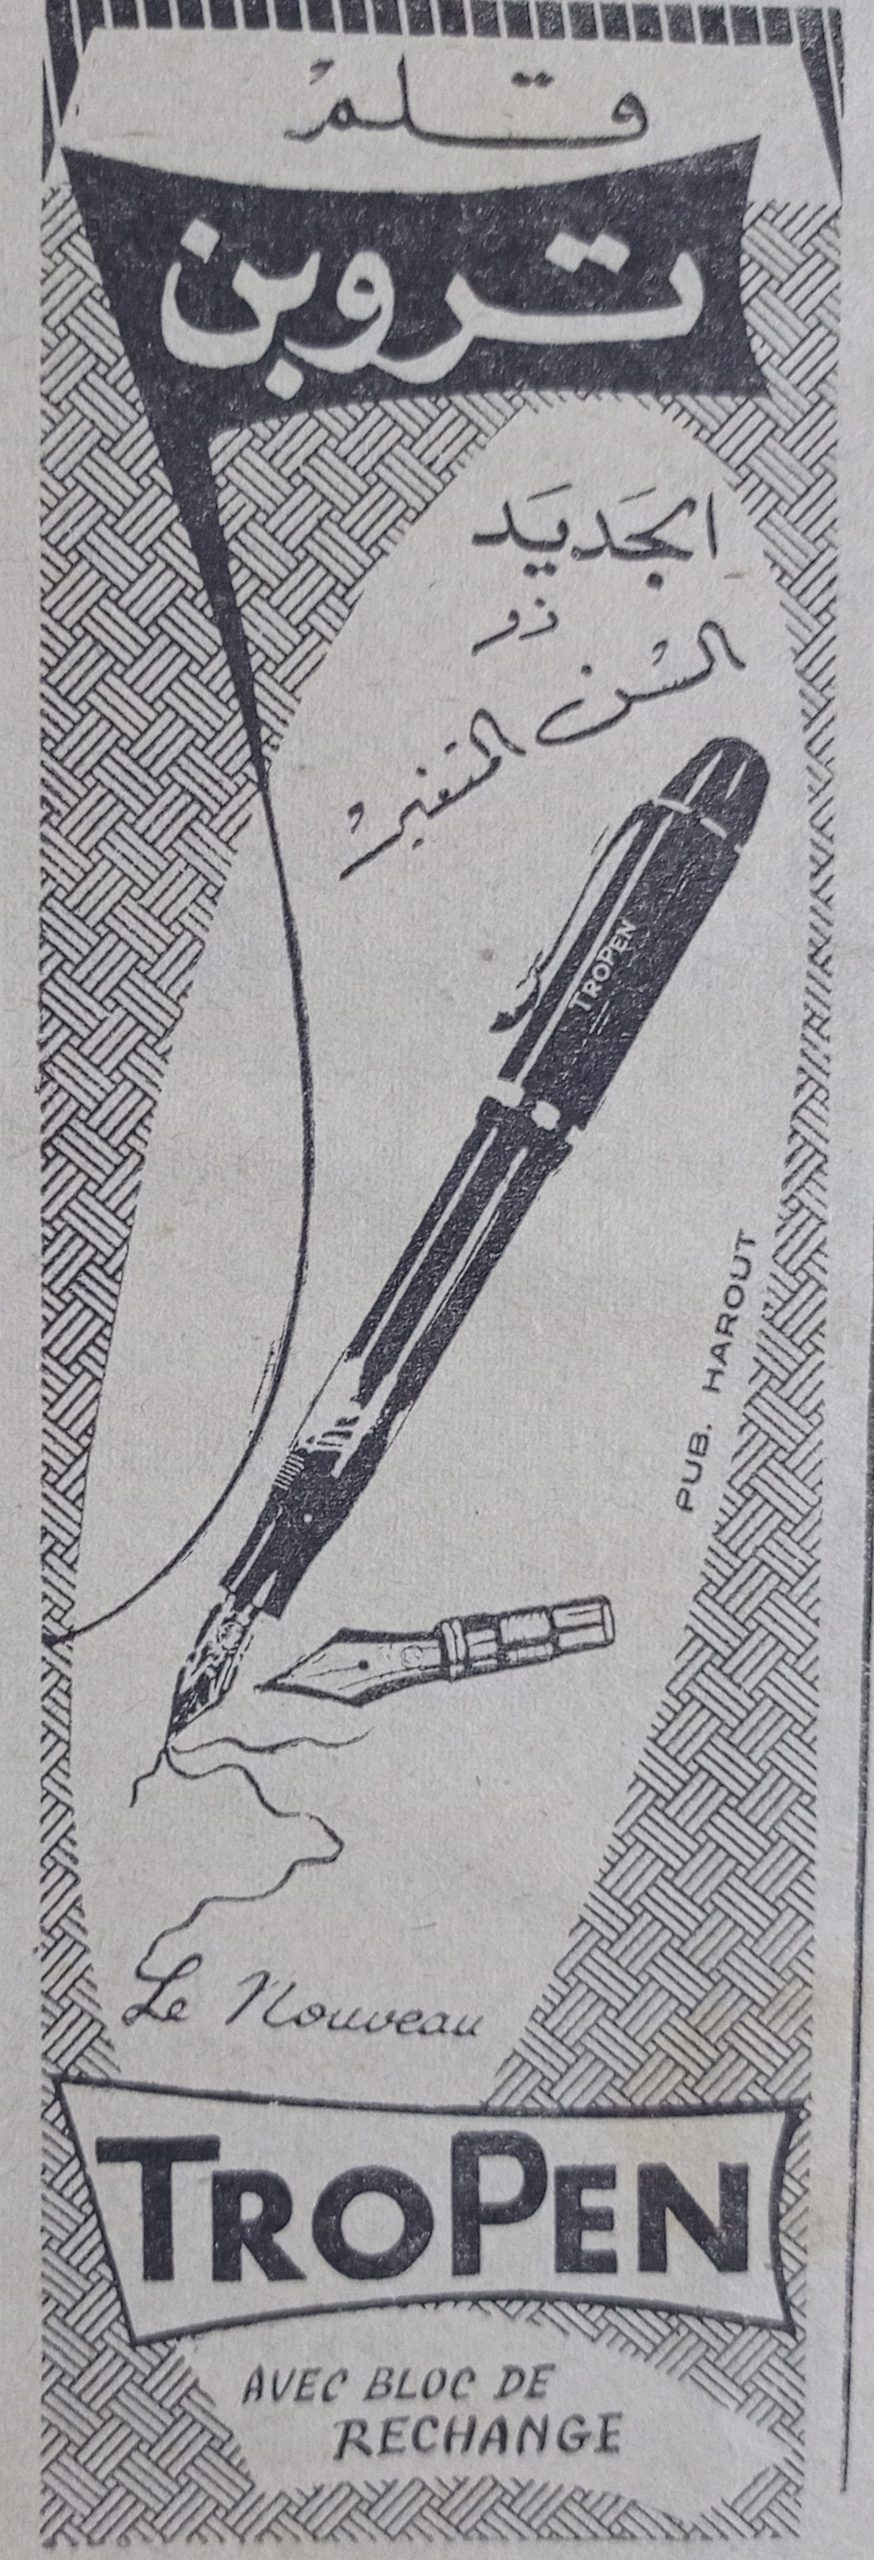 التاريخ السوري المعاصر - إعلان عن أقلام تروبن TROPEN عام 1956